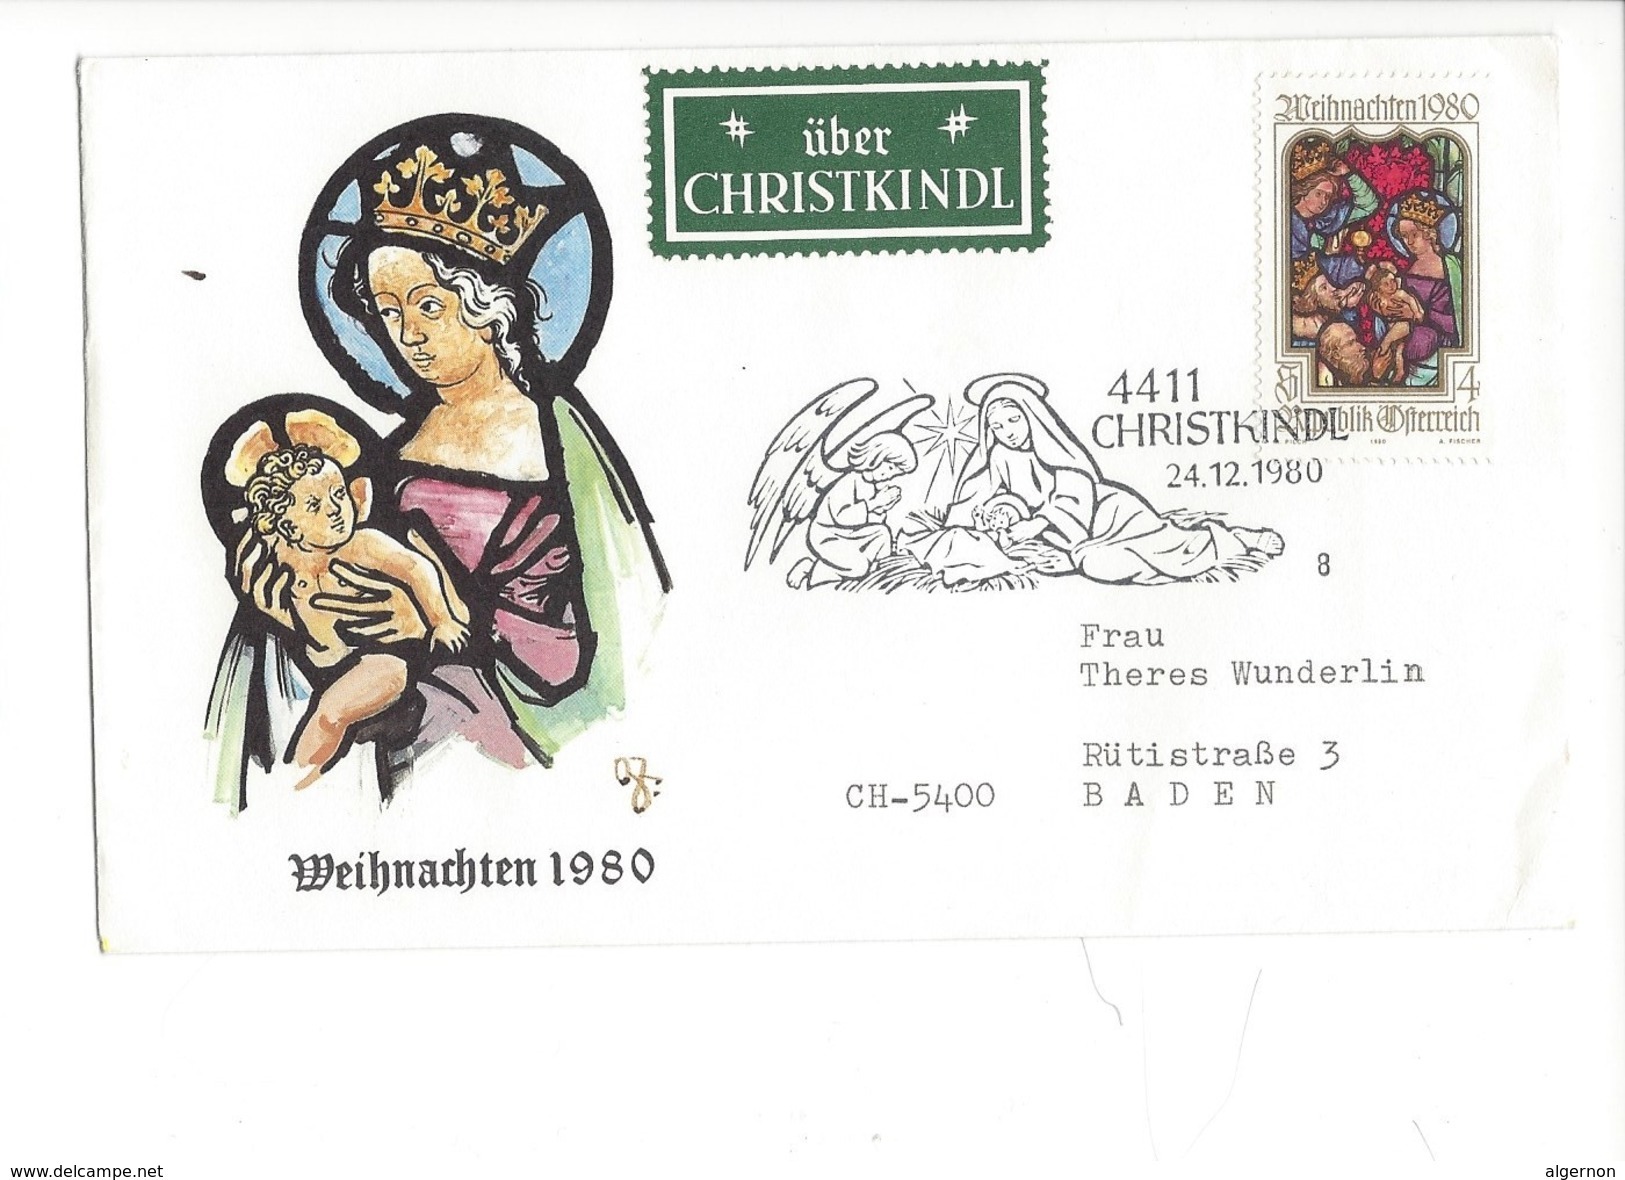 16040 - Christkindl Cover 24.12.1980 Pour Baden CH Weihnachten 1980 + über Christkindl - Christmas